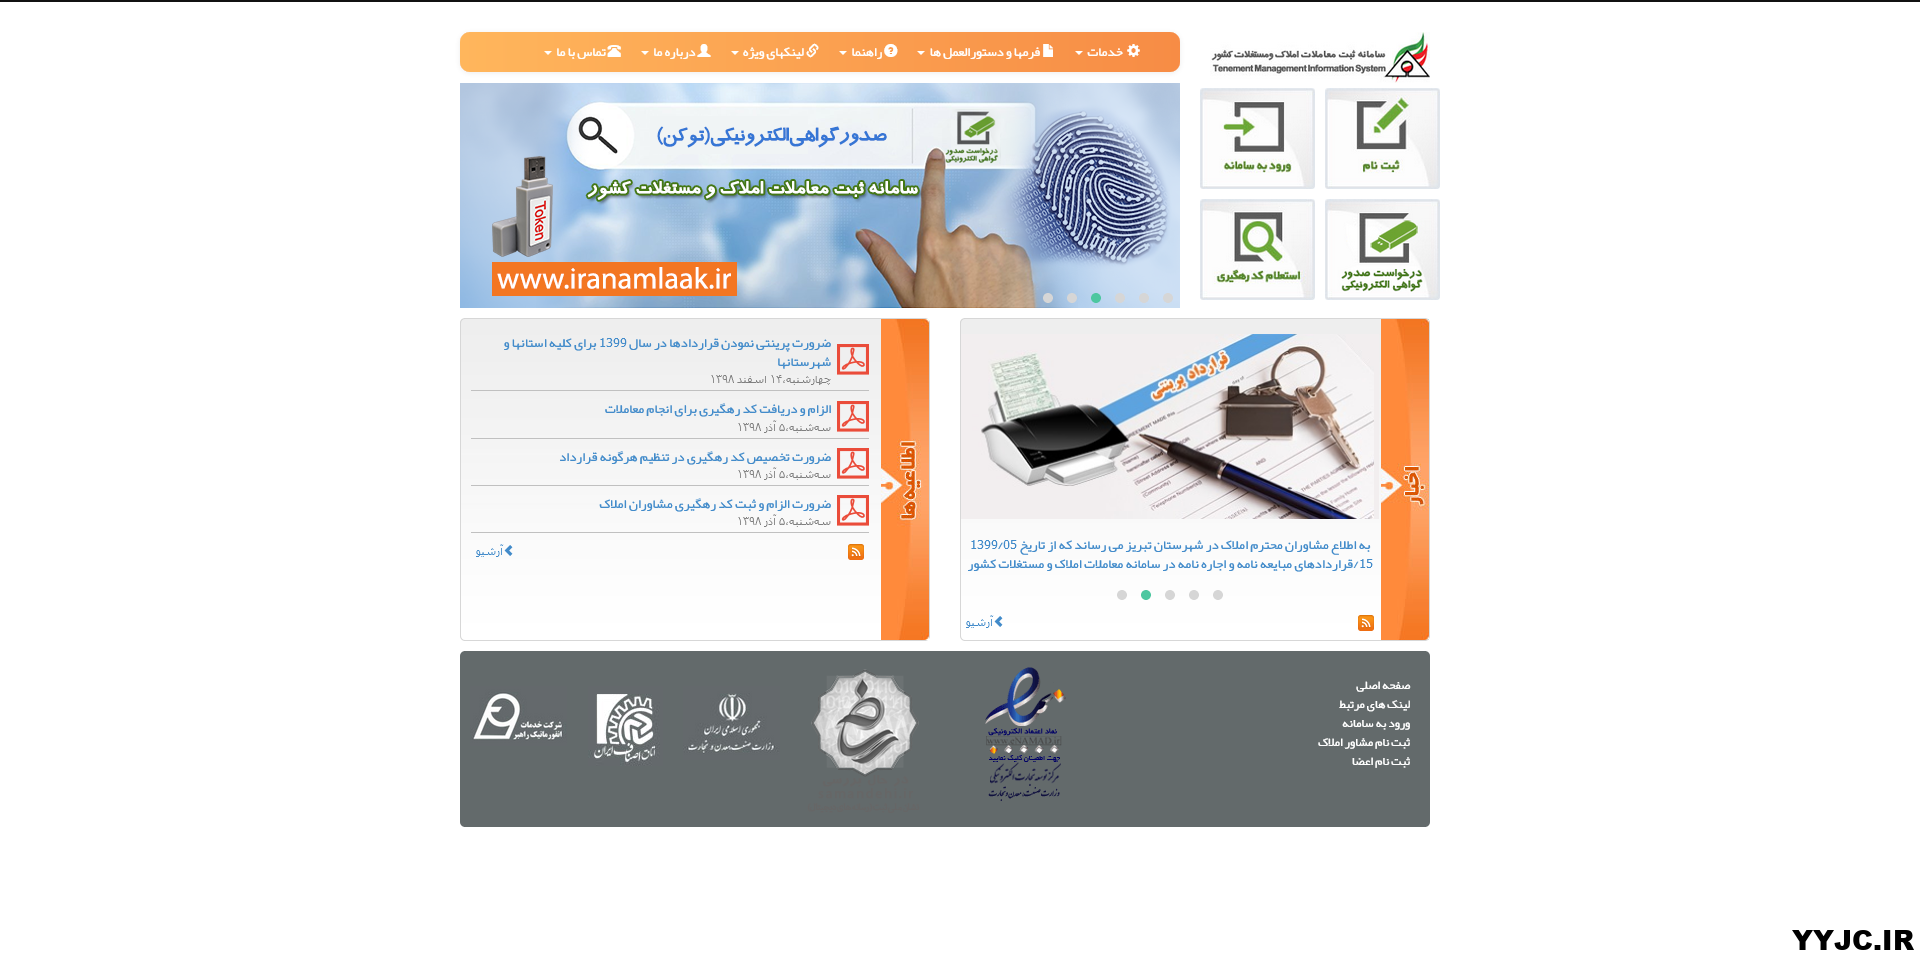 ثبت نام اعضاء در سایت ایران املاک